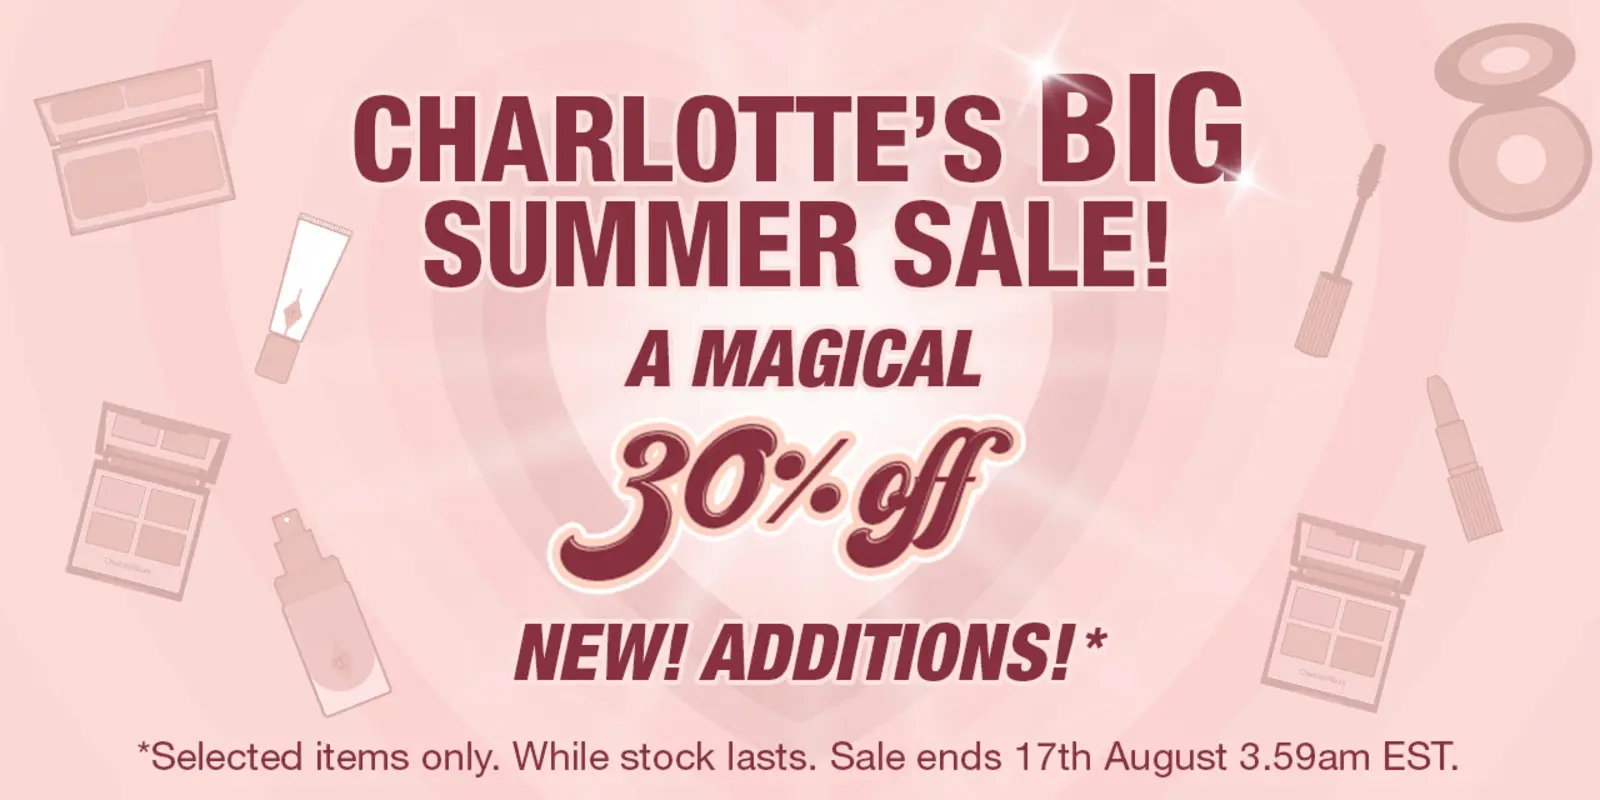 Charlotte’s BIG Summer Sale 30% off